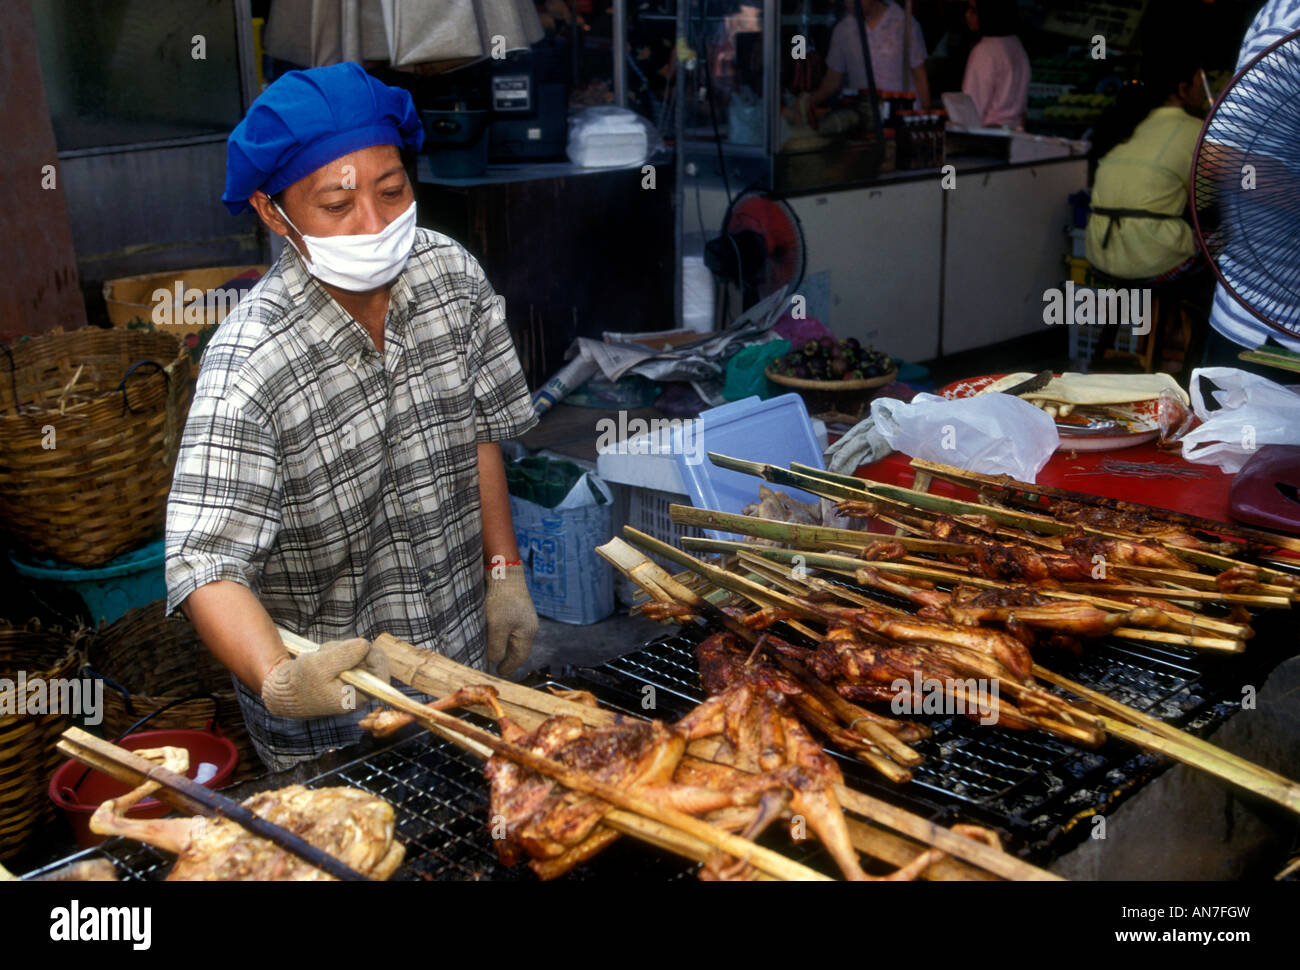 Femme thaïlandaise, femme adulte, la cuisson des aliments, vendeur, Chatuchak Weekend Market, marché de Chatuchak, Bangkok, Bangkok, Thaïlande, Province Sud-est de l'Asie, l'Asie Banque D'Images